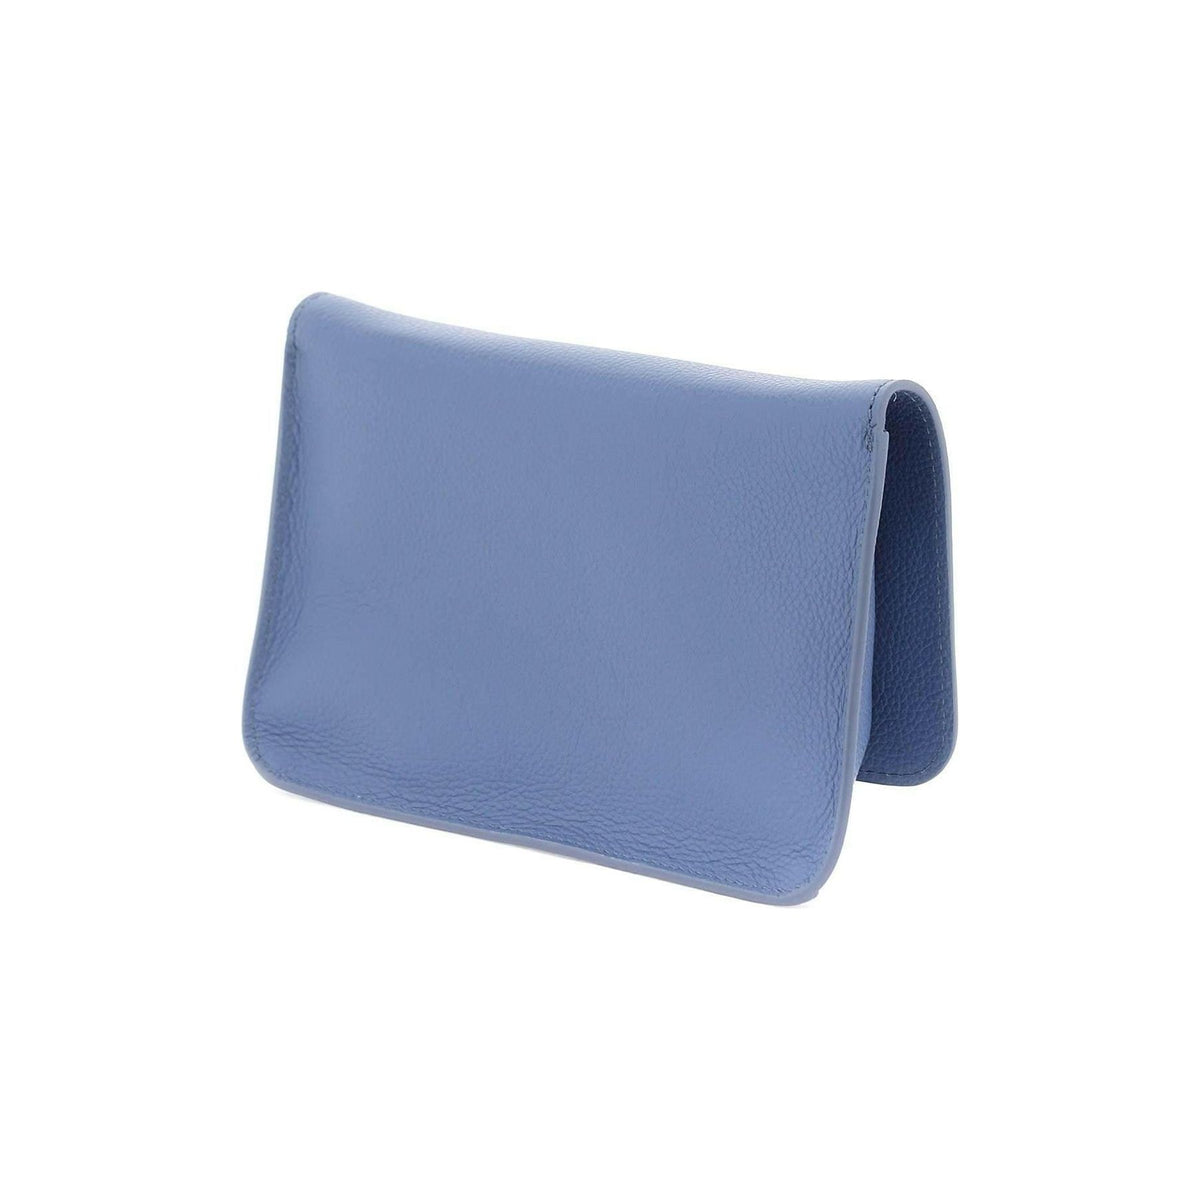 MARNI - Blue Leather Shoulder Bag With Mending - JOHN JULIA